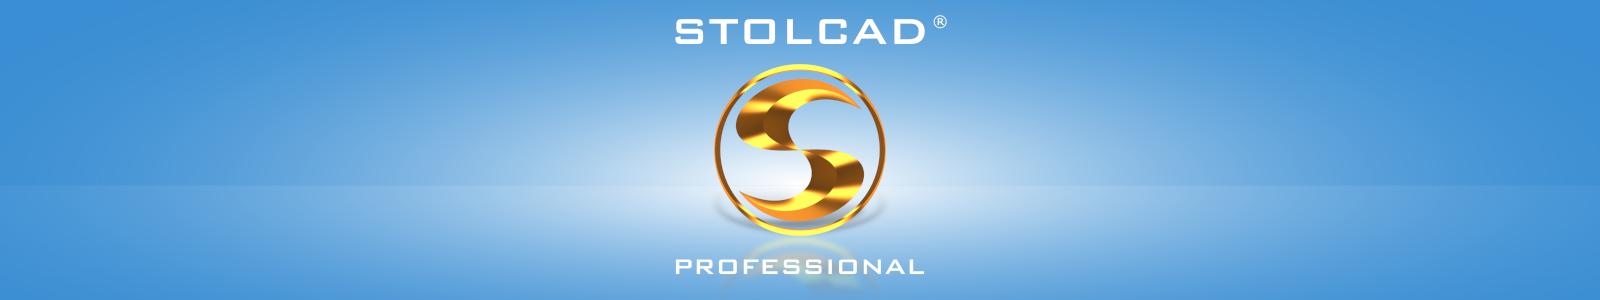 Stolcad Professional - Професионален софтуер за производители на прозорци и врати